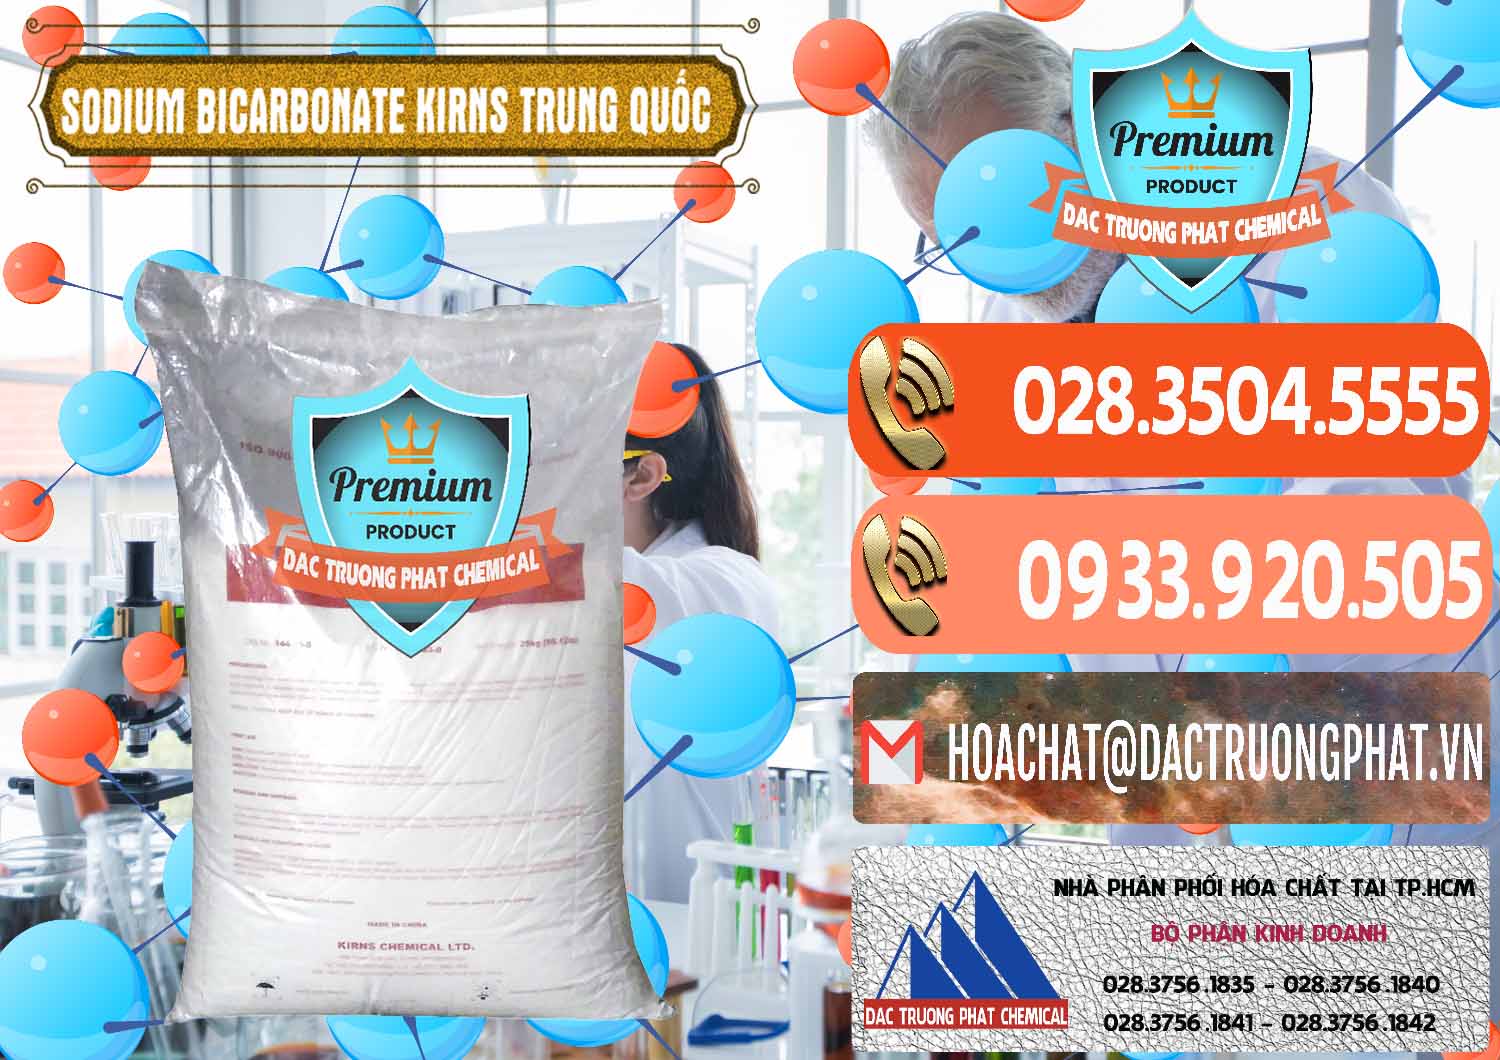 Cty chuyên bán & phân phối Sodium Bicarbonate – Bicar NaHCO3 Food Grade Kirns Trung Quốc - 0217 - Đơn vị chuyên kinh doanh ( cung cấp ) hóa chất tại TP.HCM - hoachatmientay.com